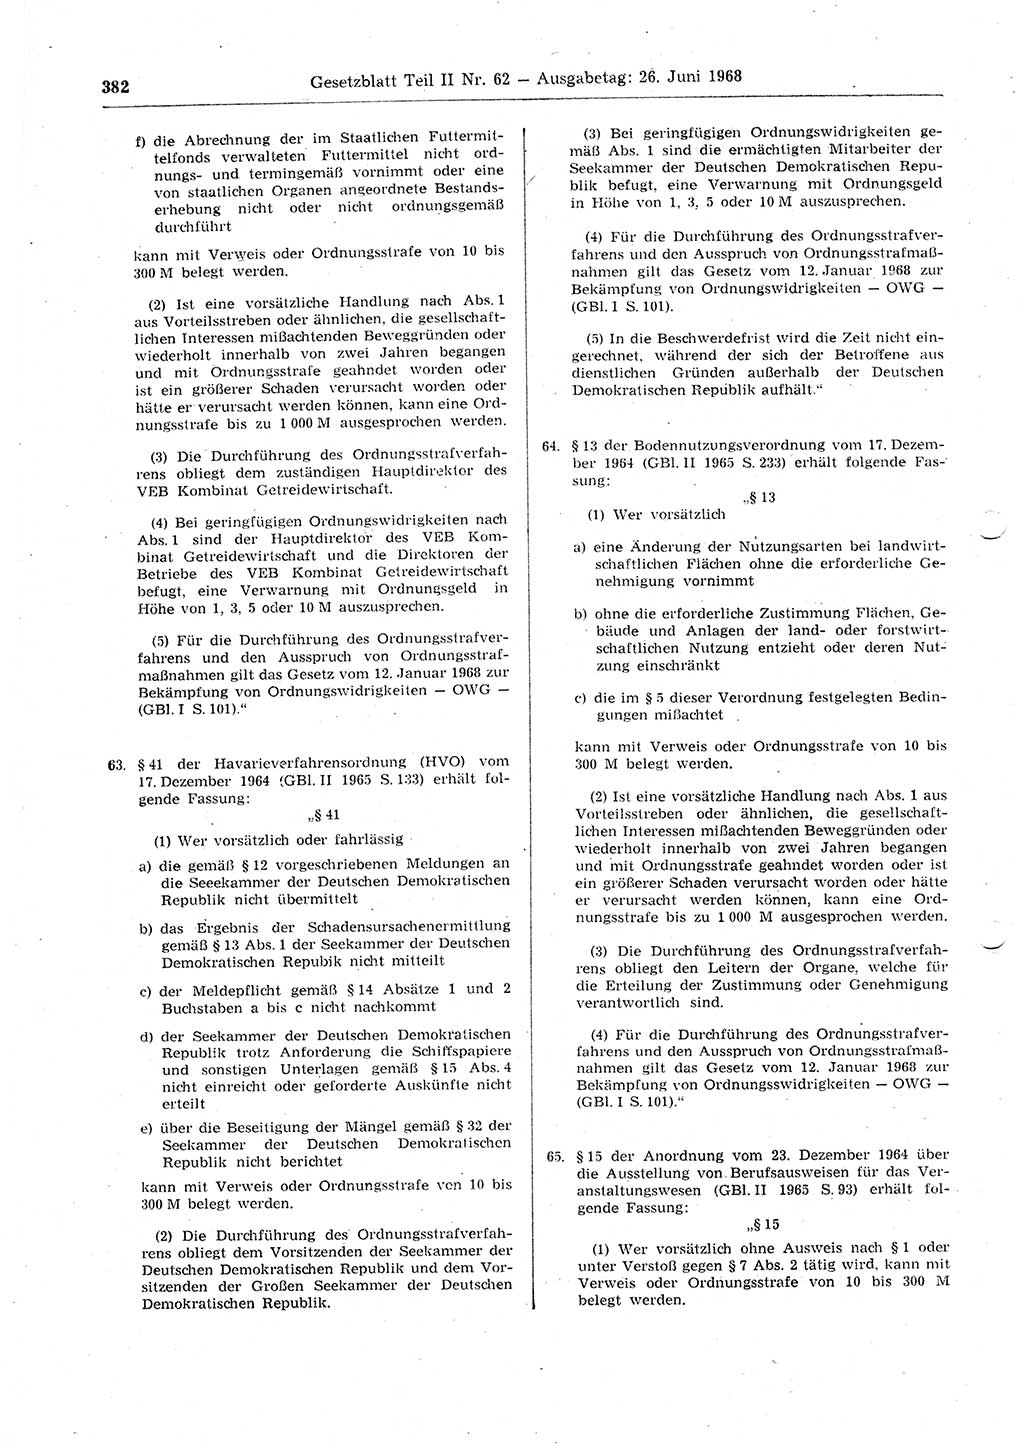 Gesetzblatt (GBl.) der Deutschen Demokratischen Republik (DDR) Teil ⅠⅠ 1968, Seite 382 (GBl. DDR ⅠⅠ 1968, S. 382)